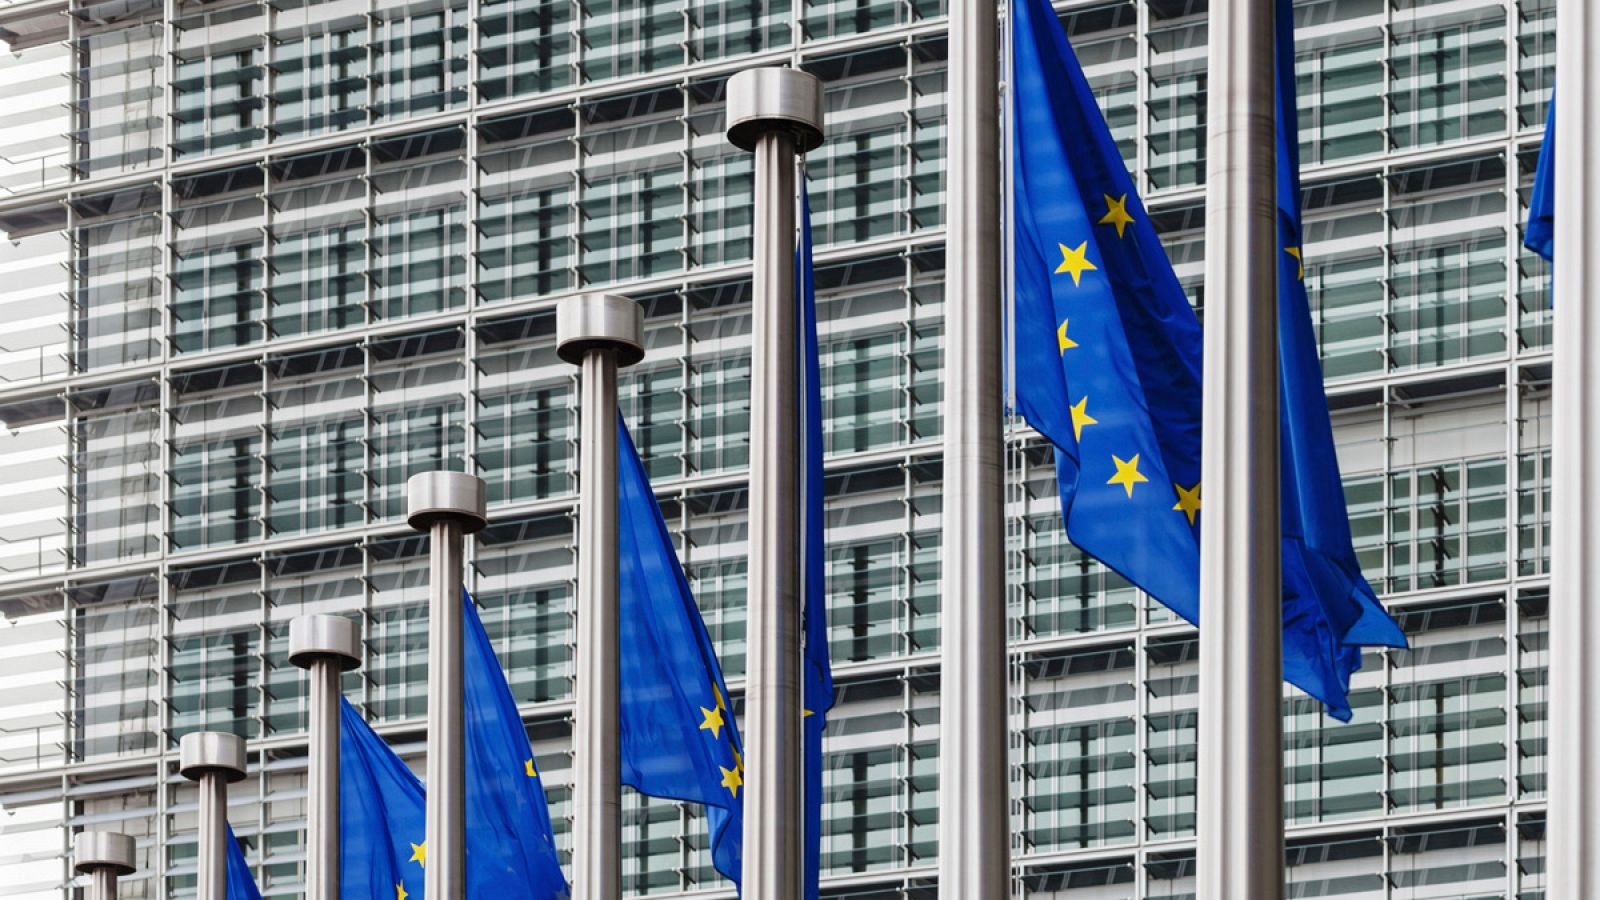 Banderas de la Unión Europea ondean delante de la sede de la Comisión